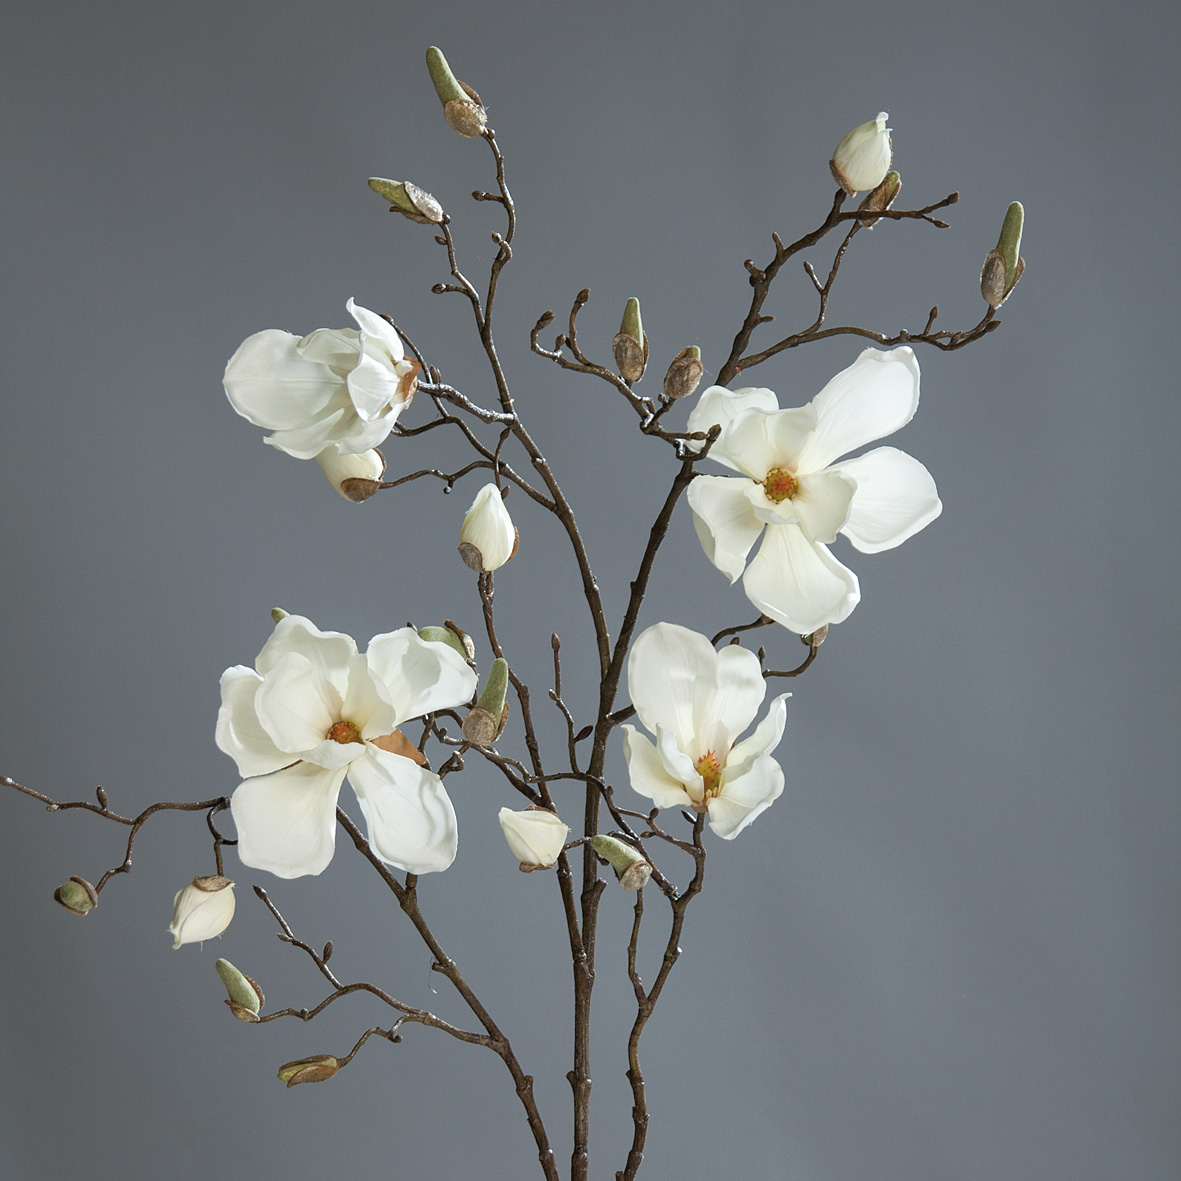 Magnolienzweig 110cm weiß-creme DP Kunstblumen künstliche Magnolie Blumen Seidenblumen